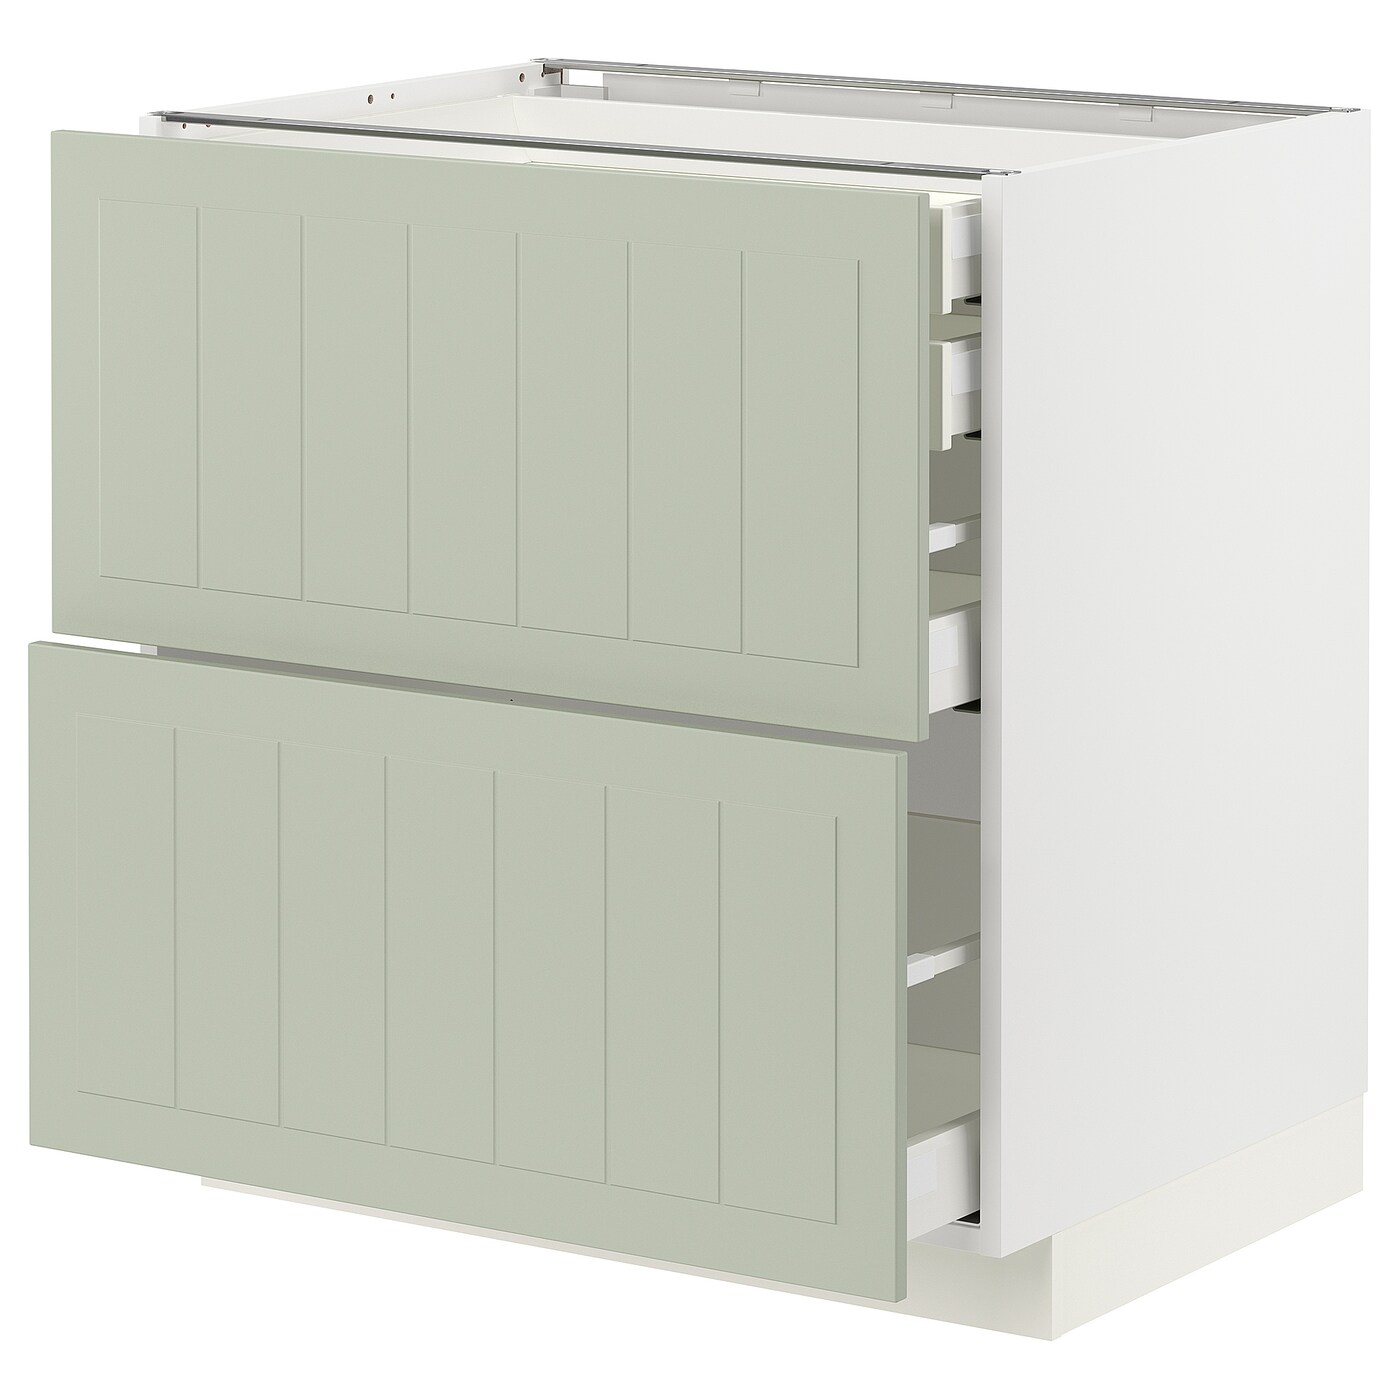 Напольный кухонный шкаф  - IKEA METOD MAXIMERA, 88x62x80см, белый/светло-зеленый, МЕТОД МАКСИМЕРА ИКЕА